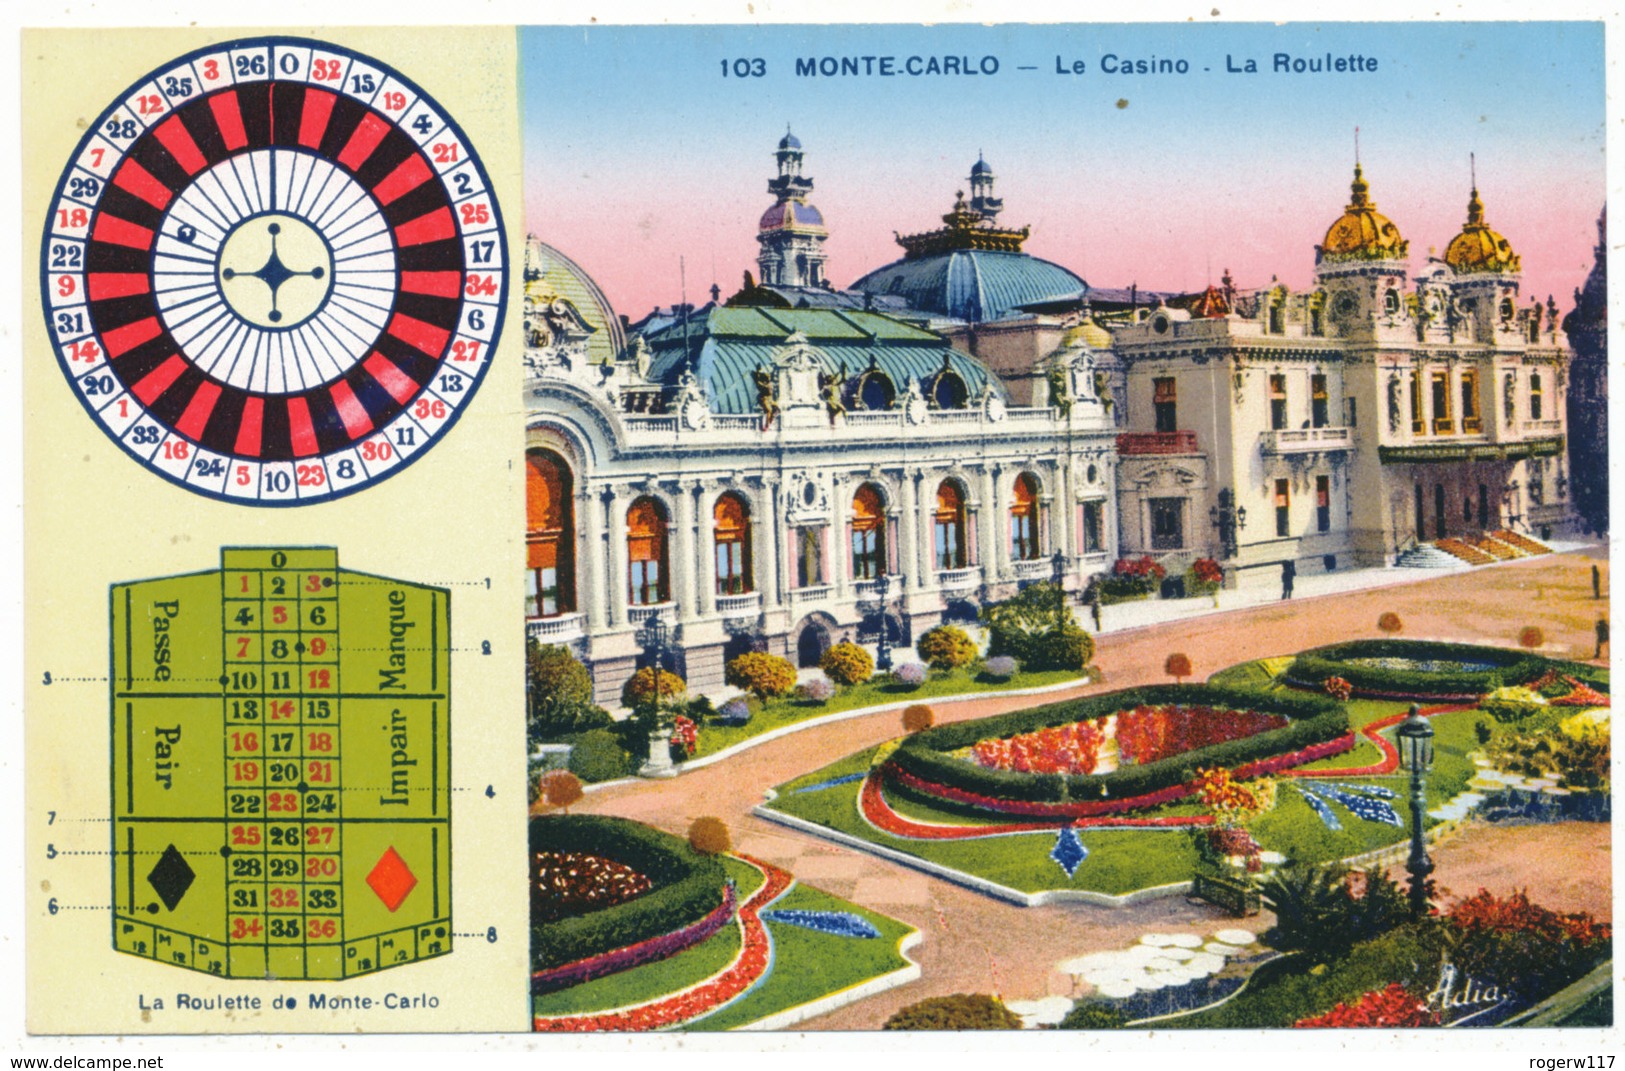 Monte Carlo - Le Casino - La Roulette - Casino